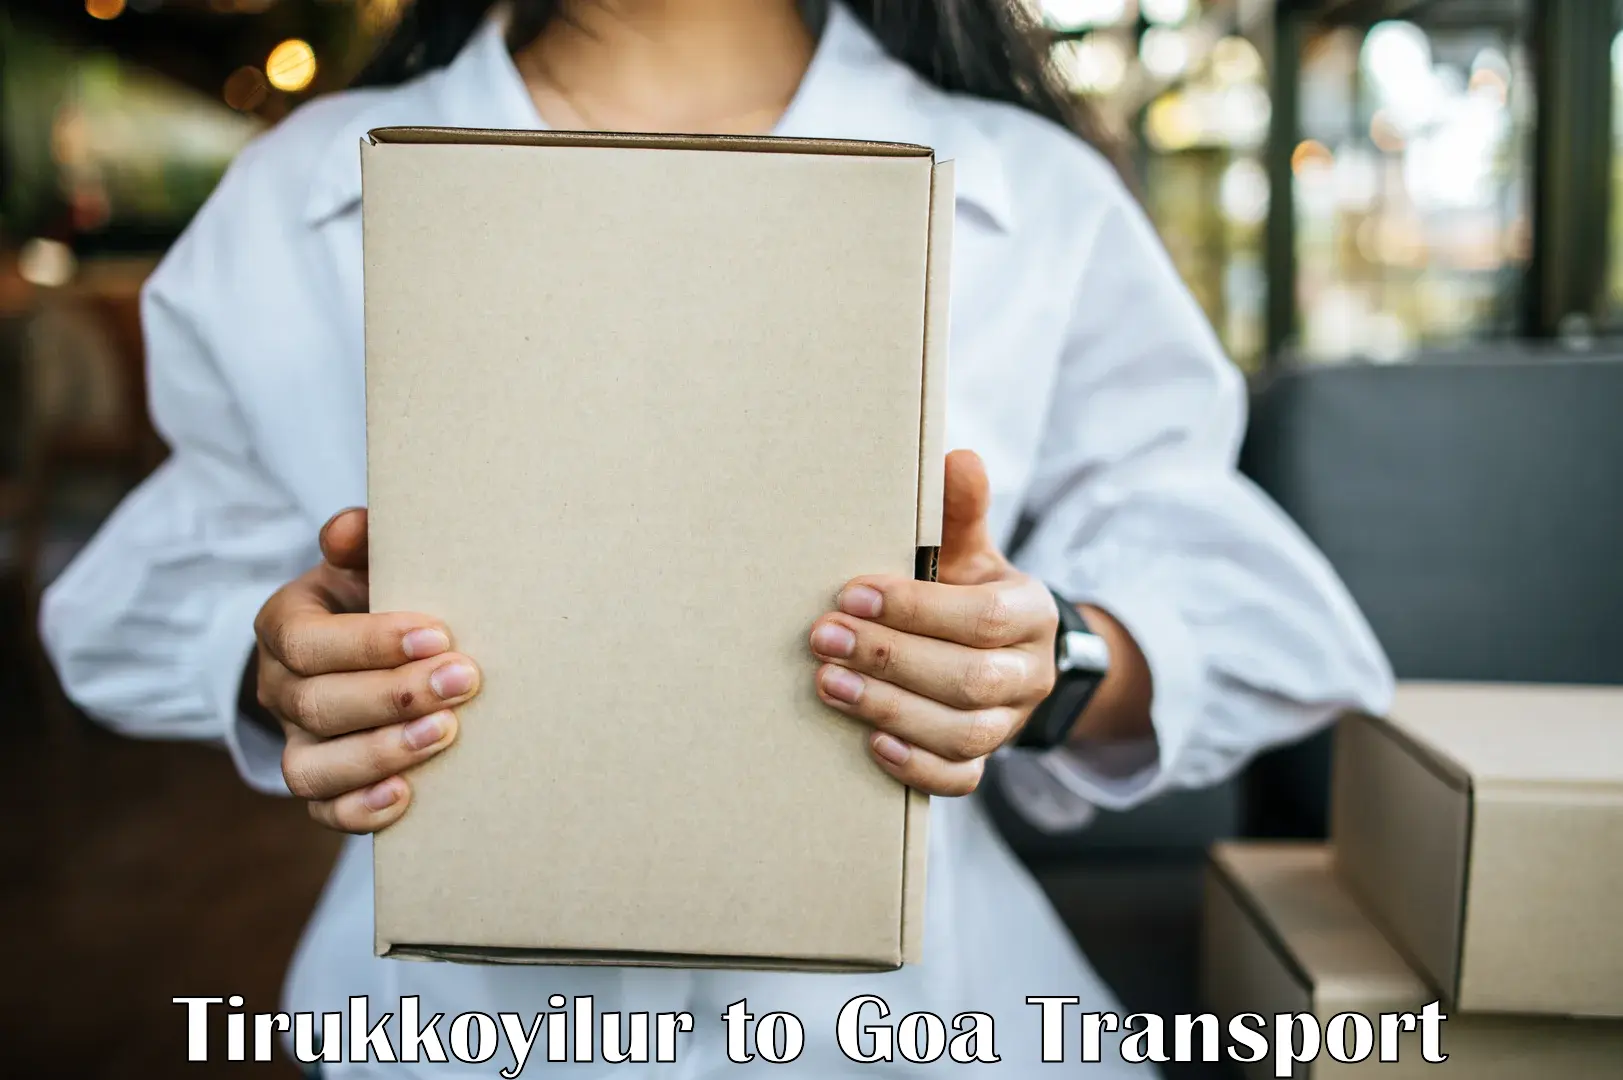 Shipping services Tirukkoyilur to Goa